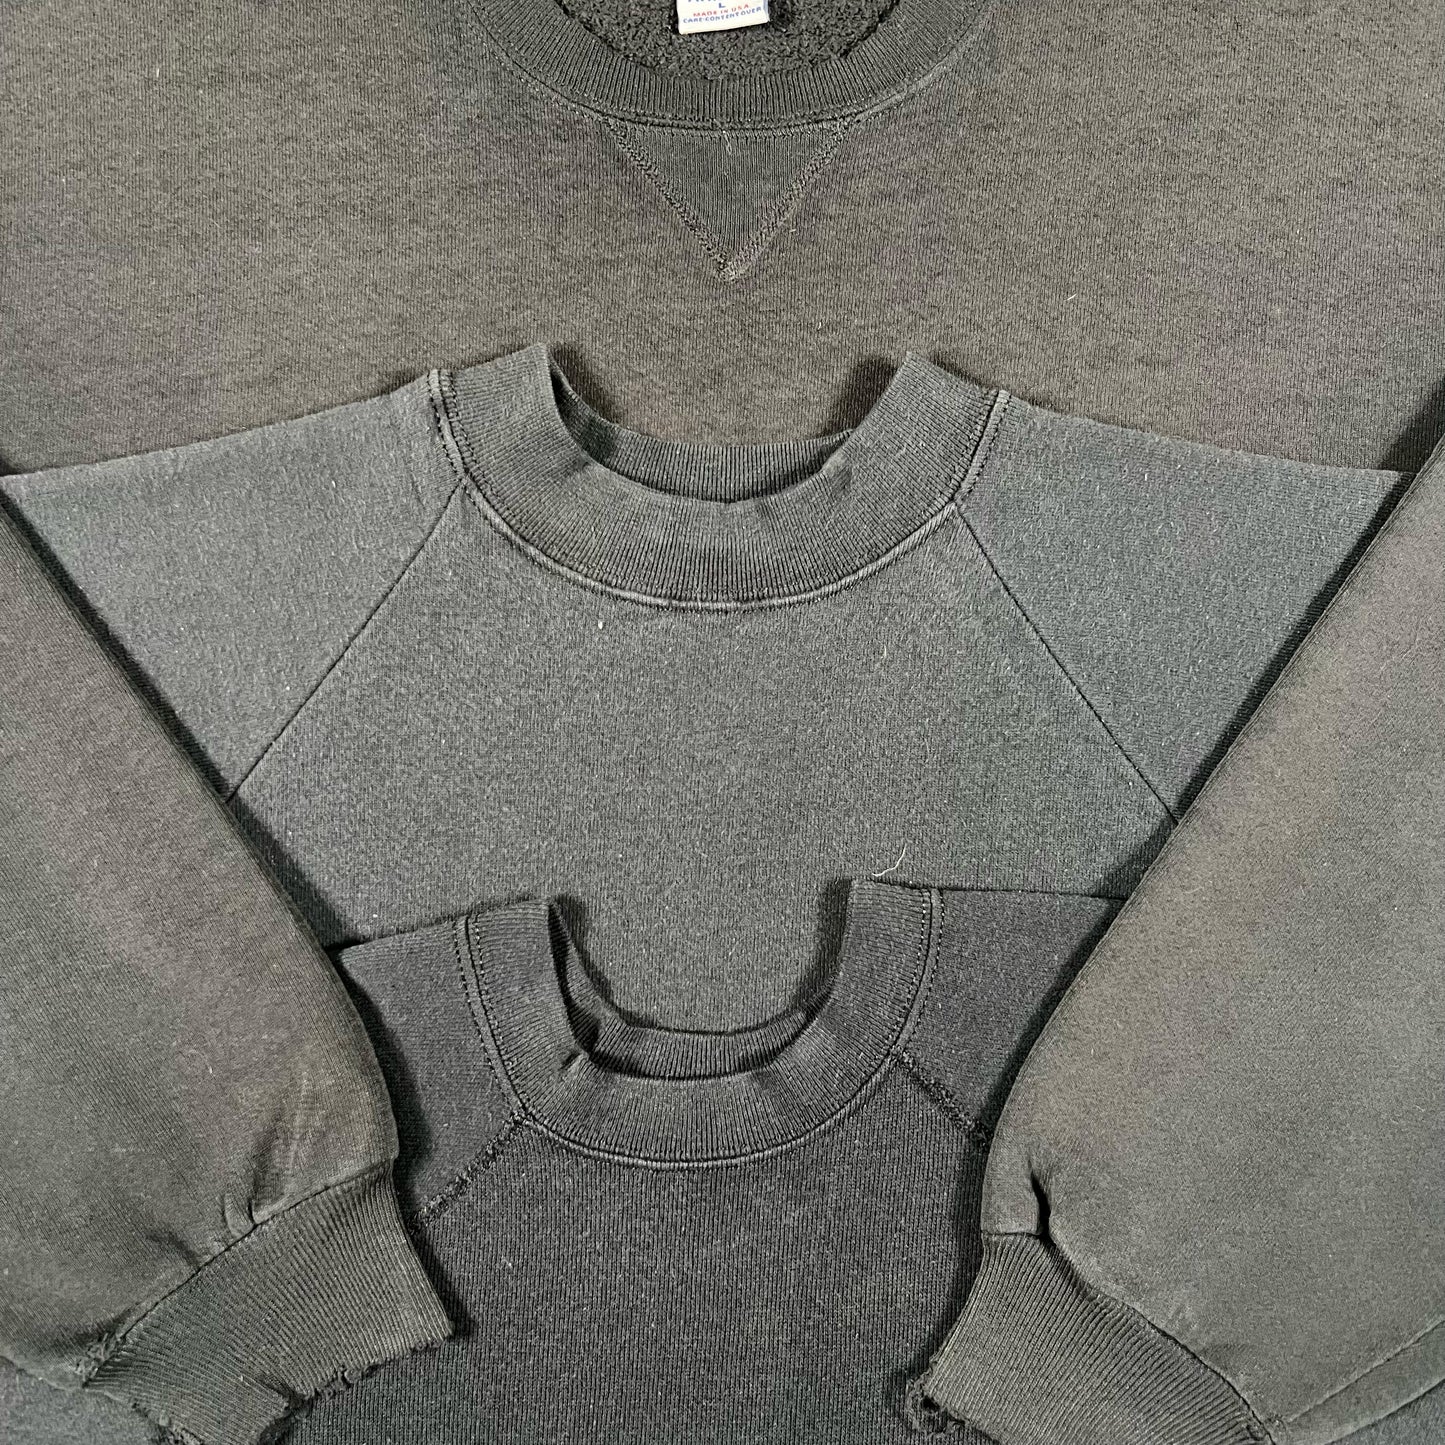 Vintage Blank Black Sweatshirt- M,L,XL,XXL